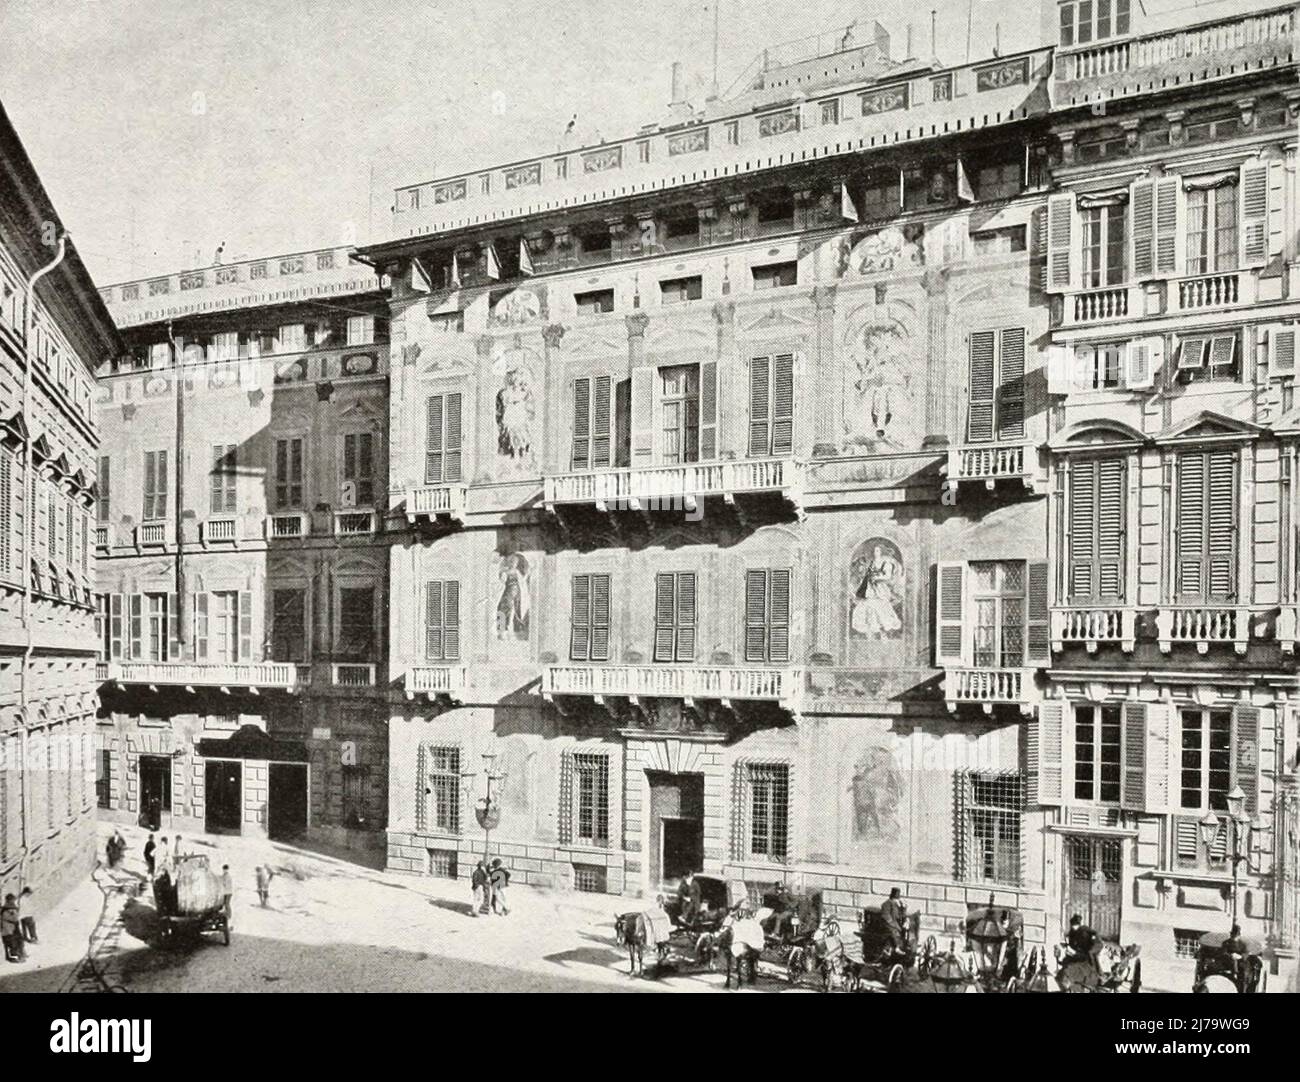 Palazzo Pallavicini, Genoa, Italy, circa 1900 Stock Photo